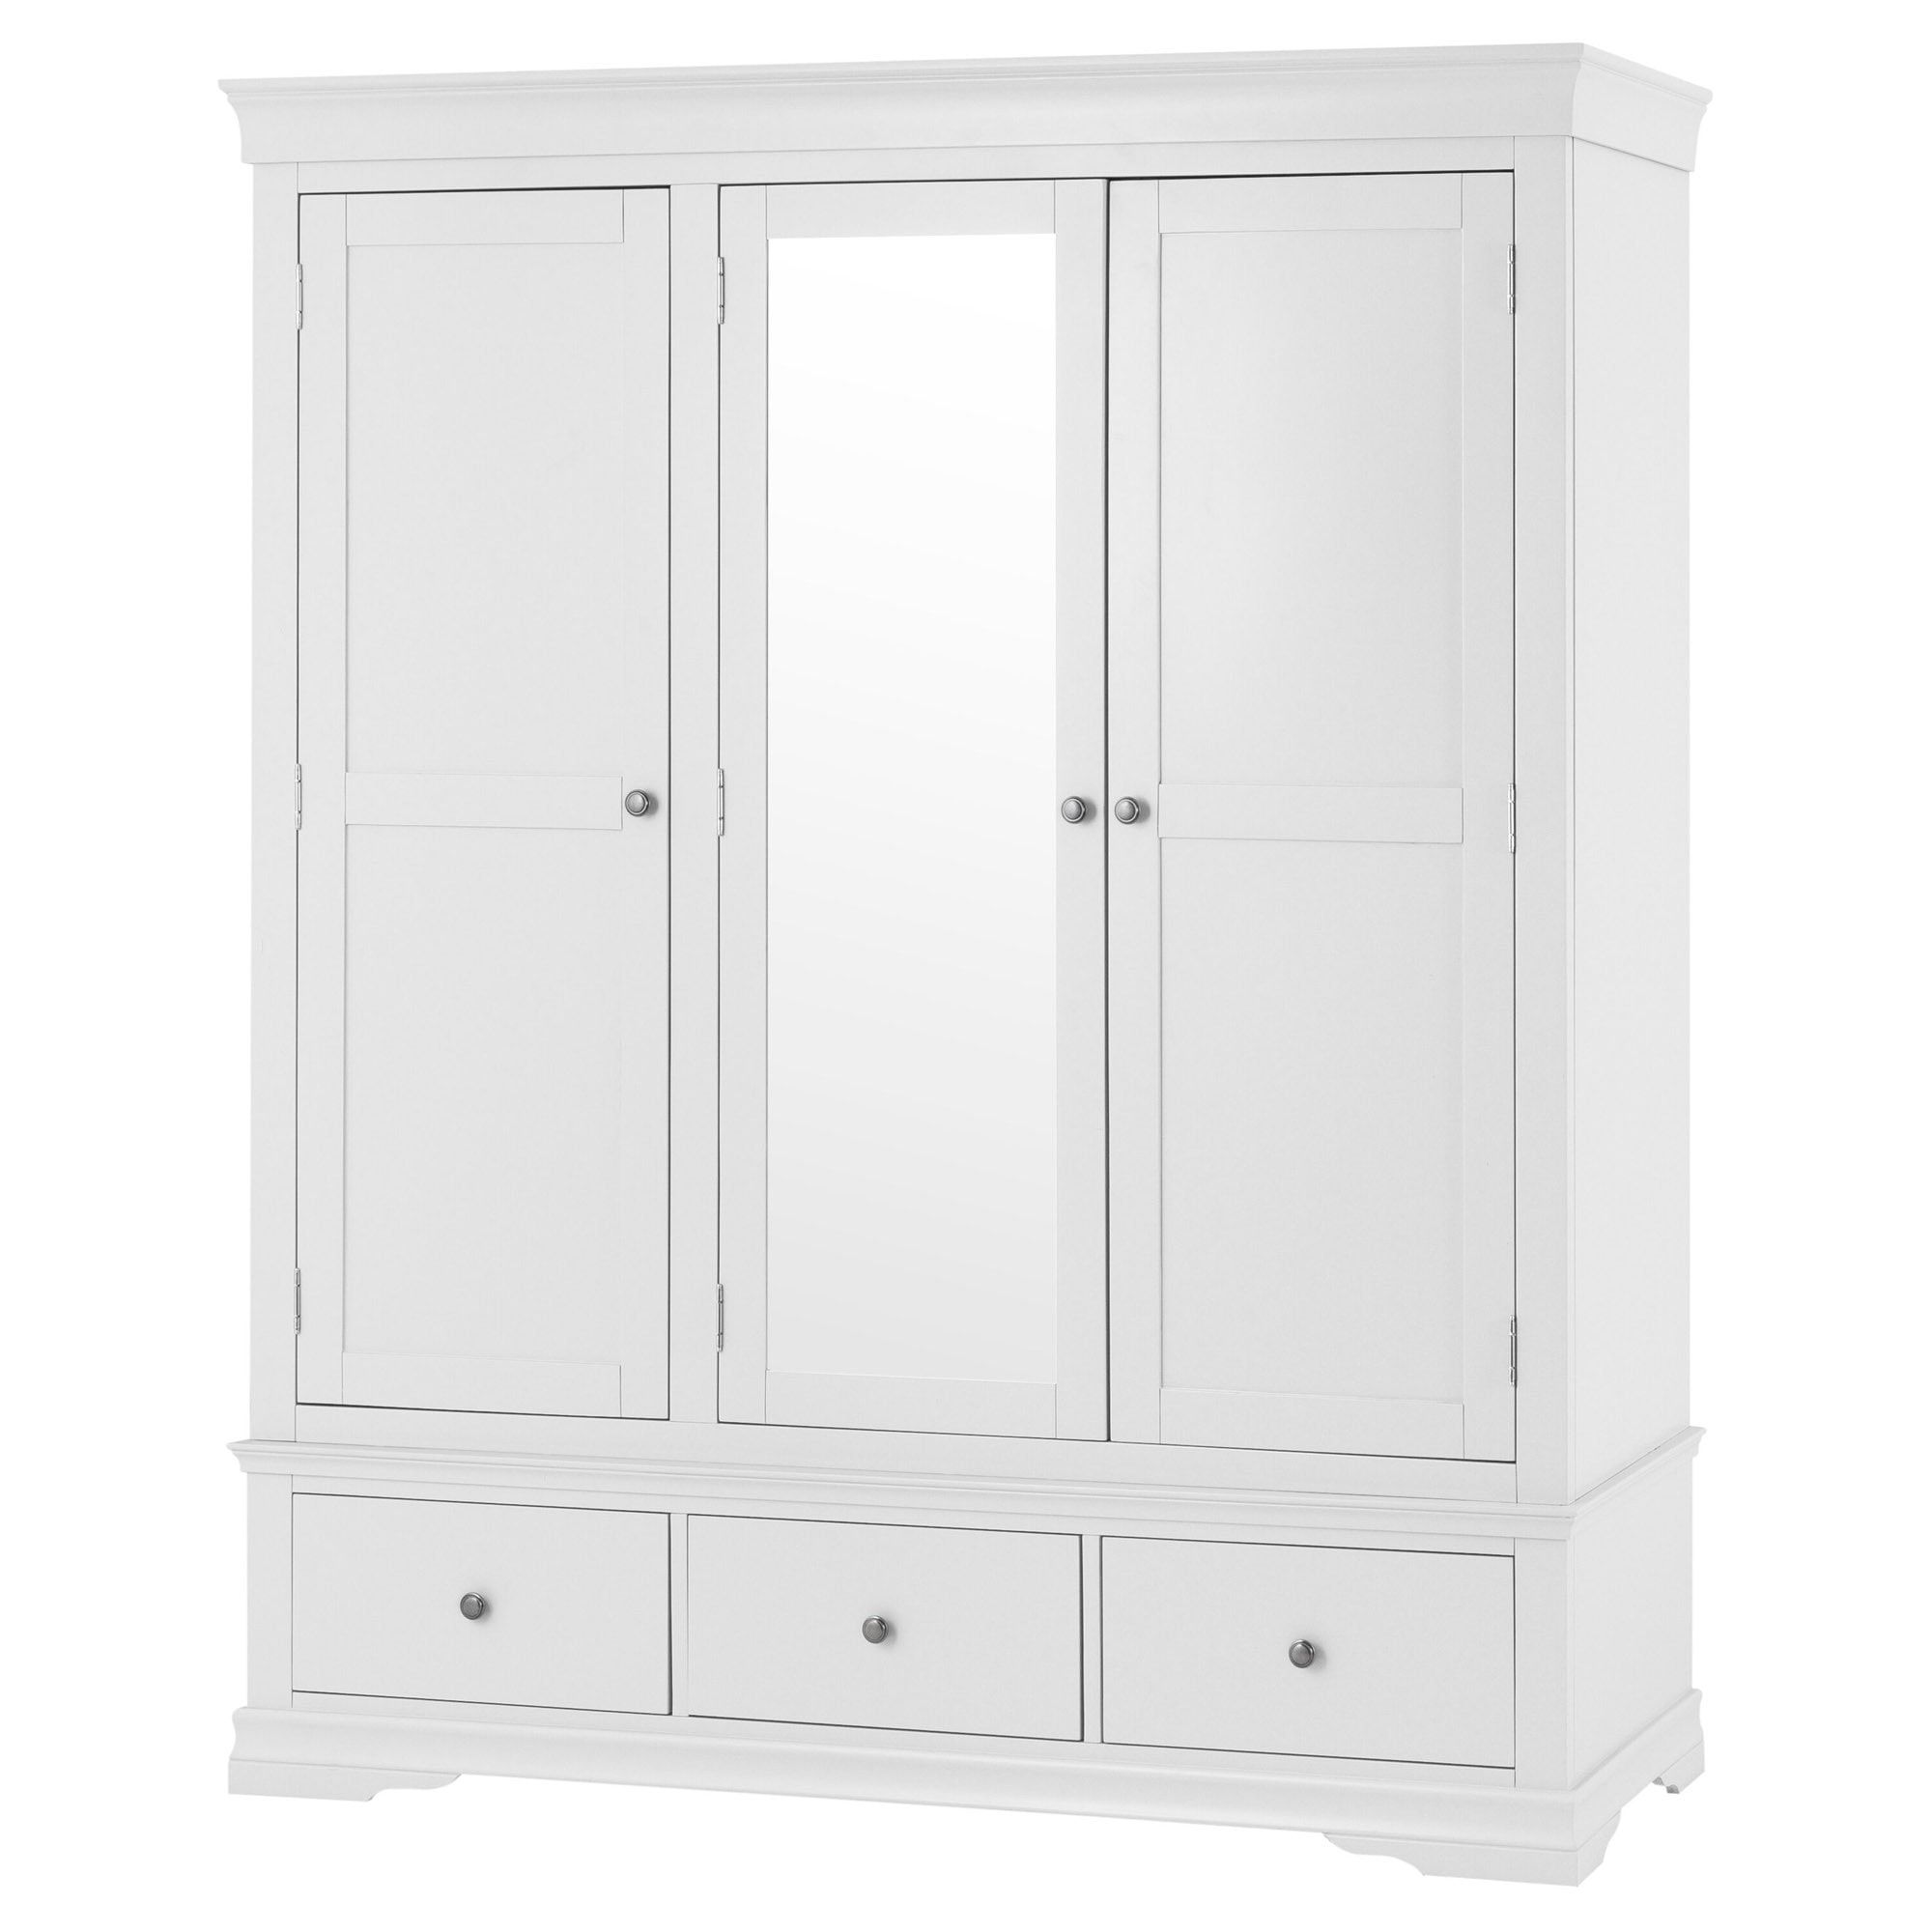 Swindon White 3 Door 3 Drawer Wardrobe | White Wardrobe | White Wooden  Wardrobe For White Wood Wardrobes (View 3 of 20)